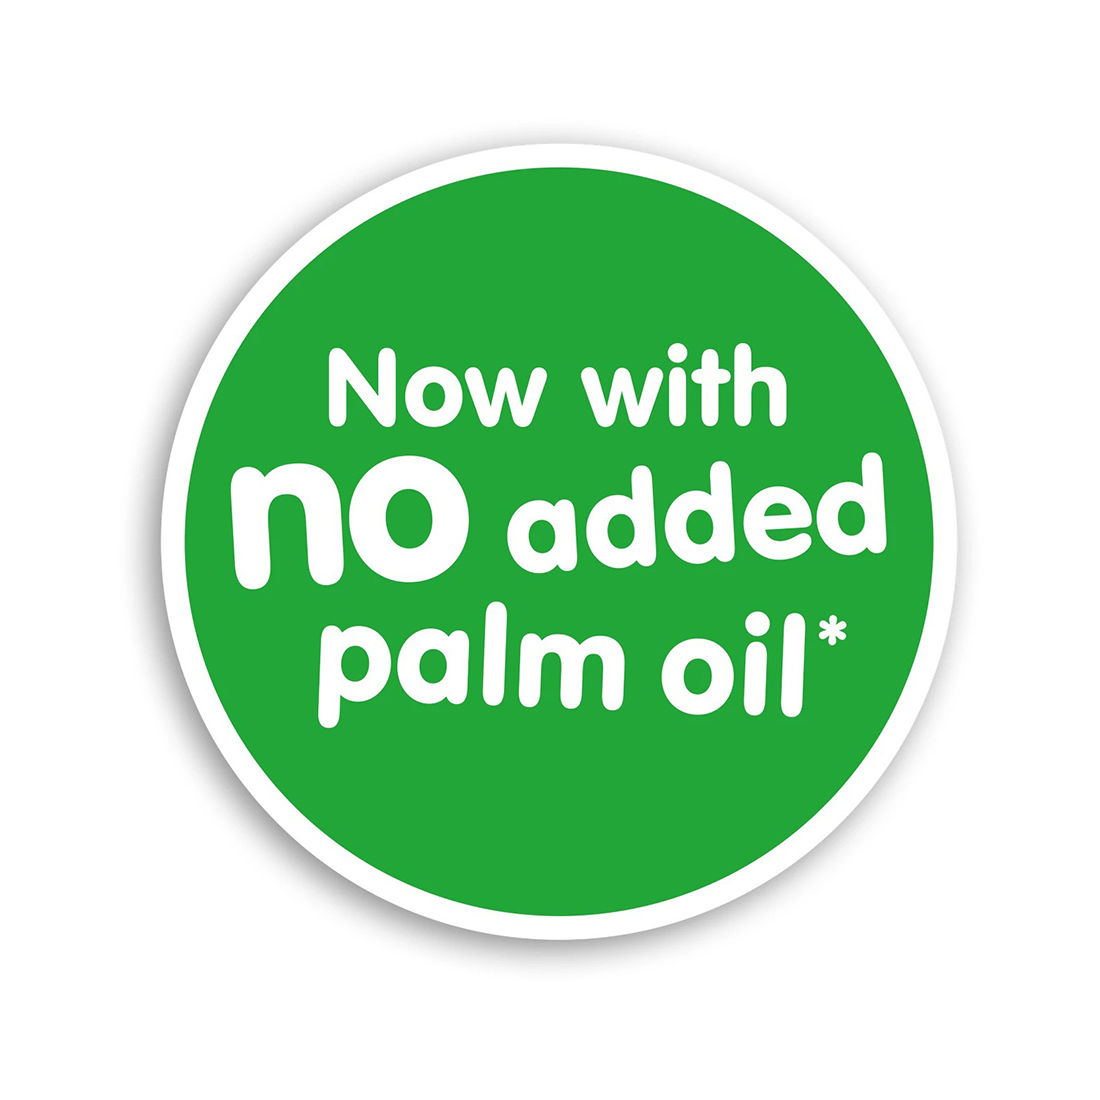 No palm oil logo